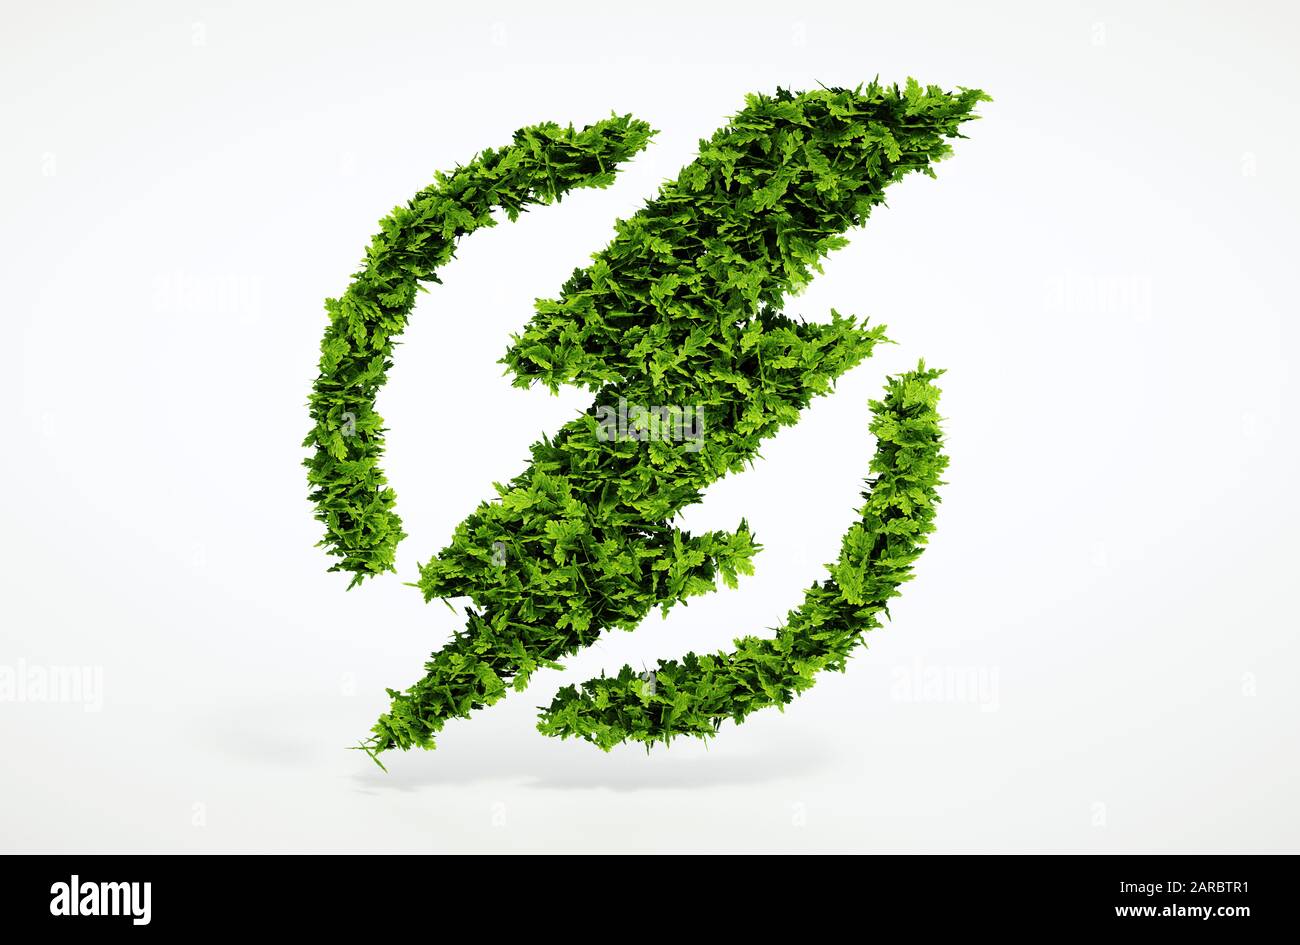 Imagen de símbolo de flash ecológico de presentación 3d aislado con fondo blanco Foto de stock